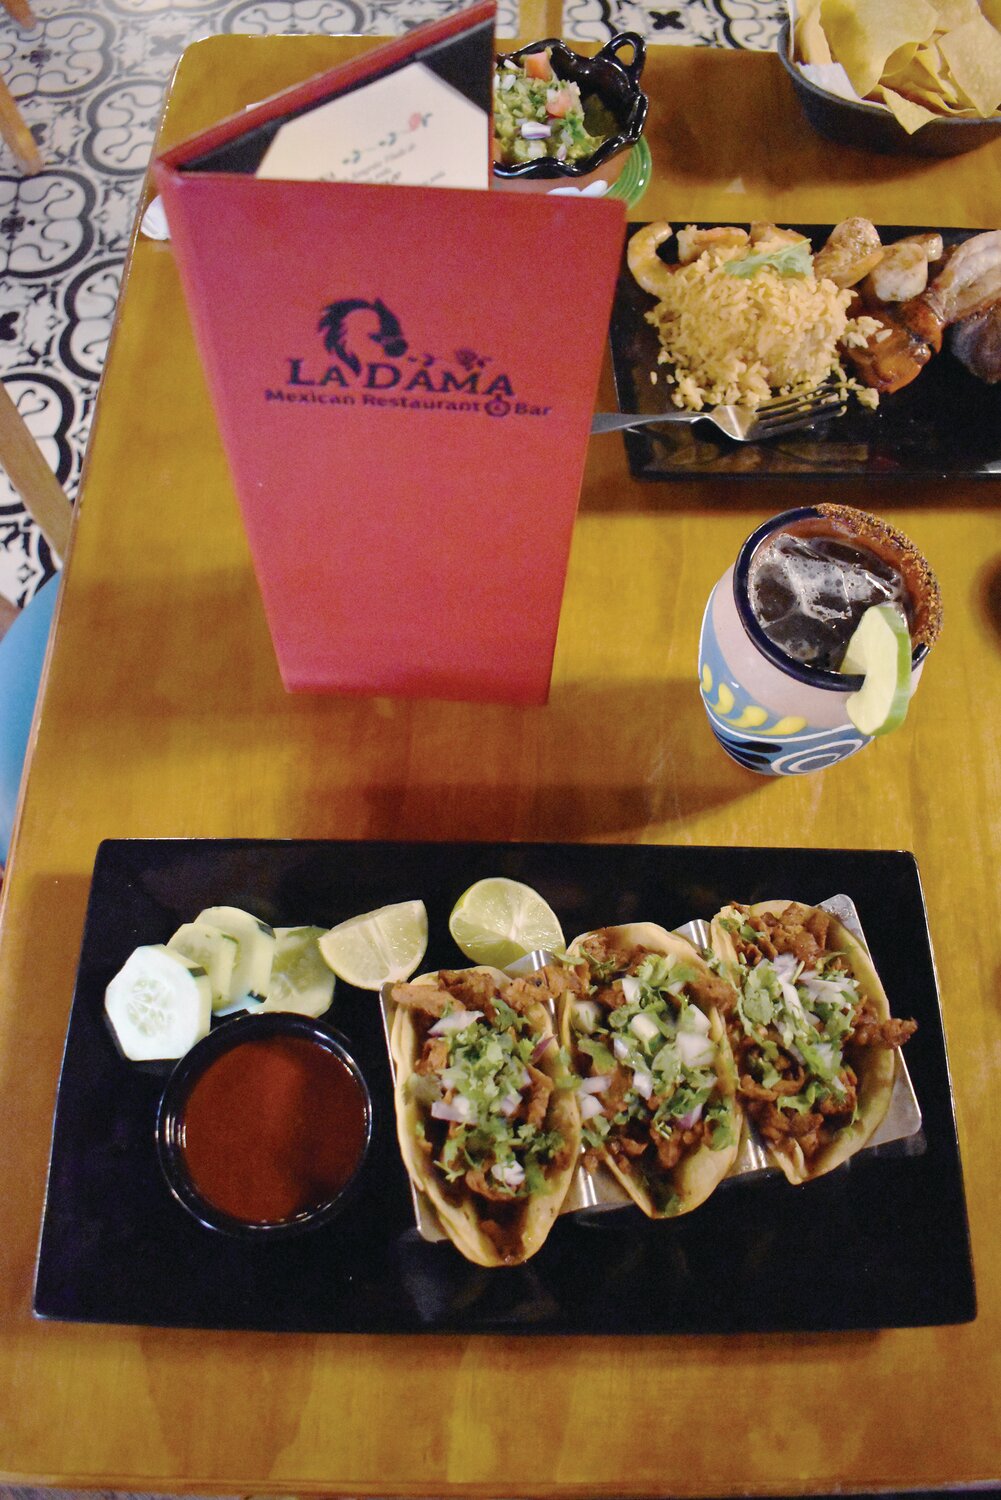 La Dama, Mexican restaurant in Dagsboro, Del.